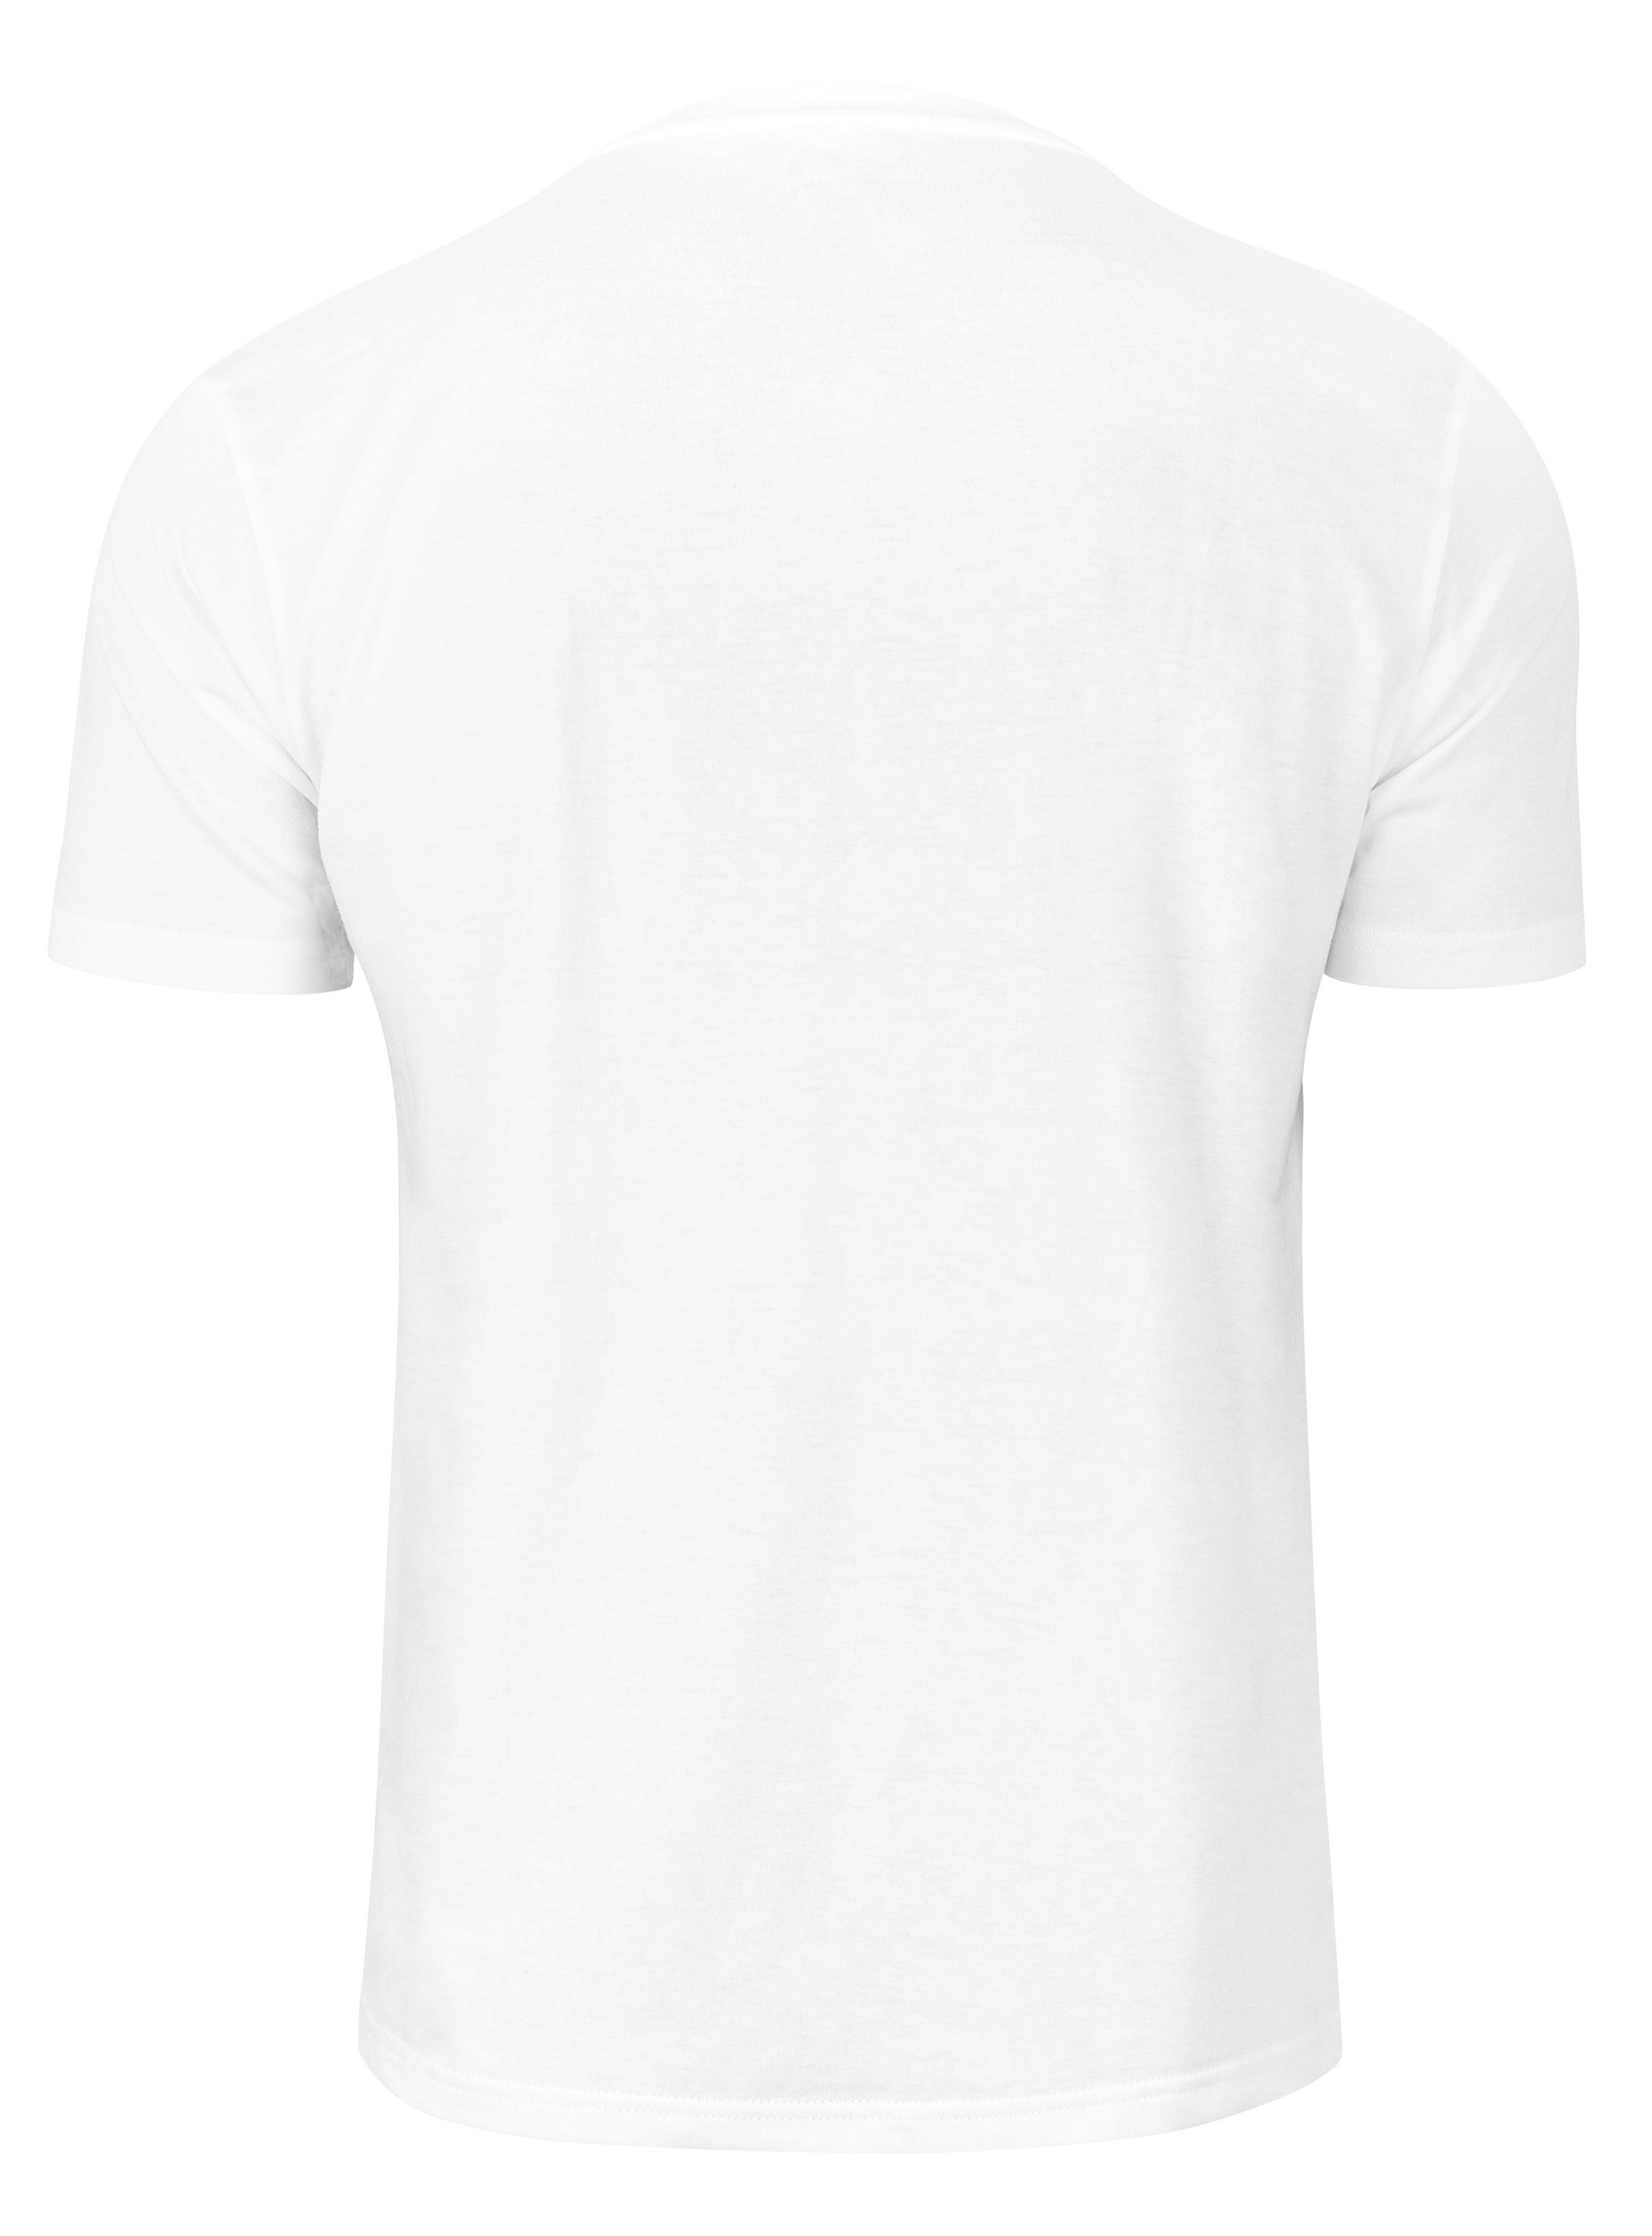 Cotton Prime® T-Shirt - Vorderrad Weiß